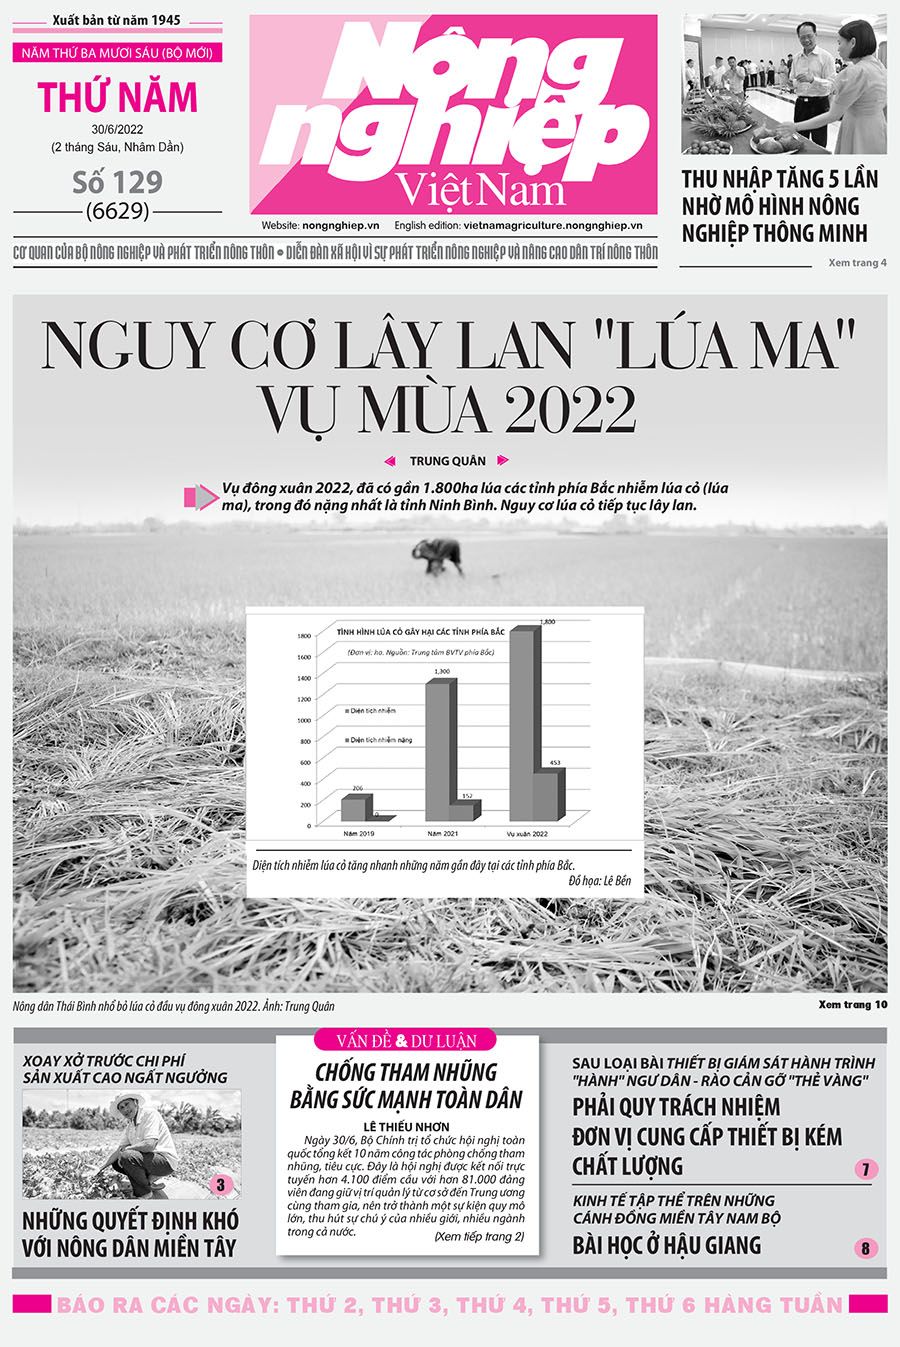 Tổng hợp tin tức báo giấy trên Báo Nông nghiệp Việt Nam số 129 ra ngày 30/6/2022